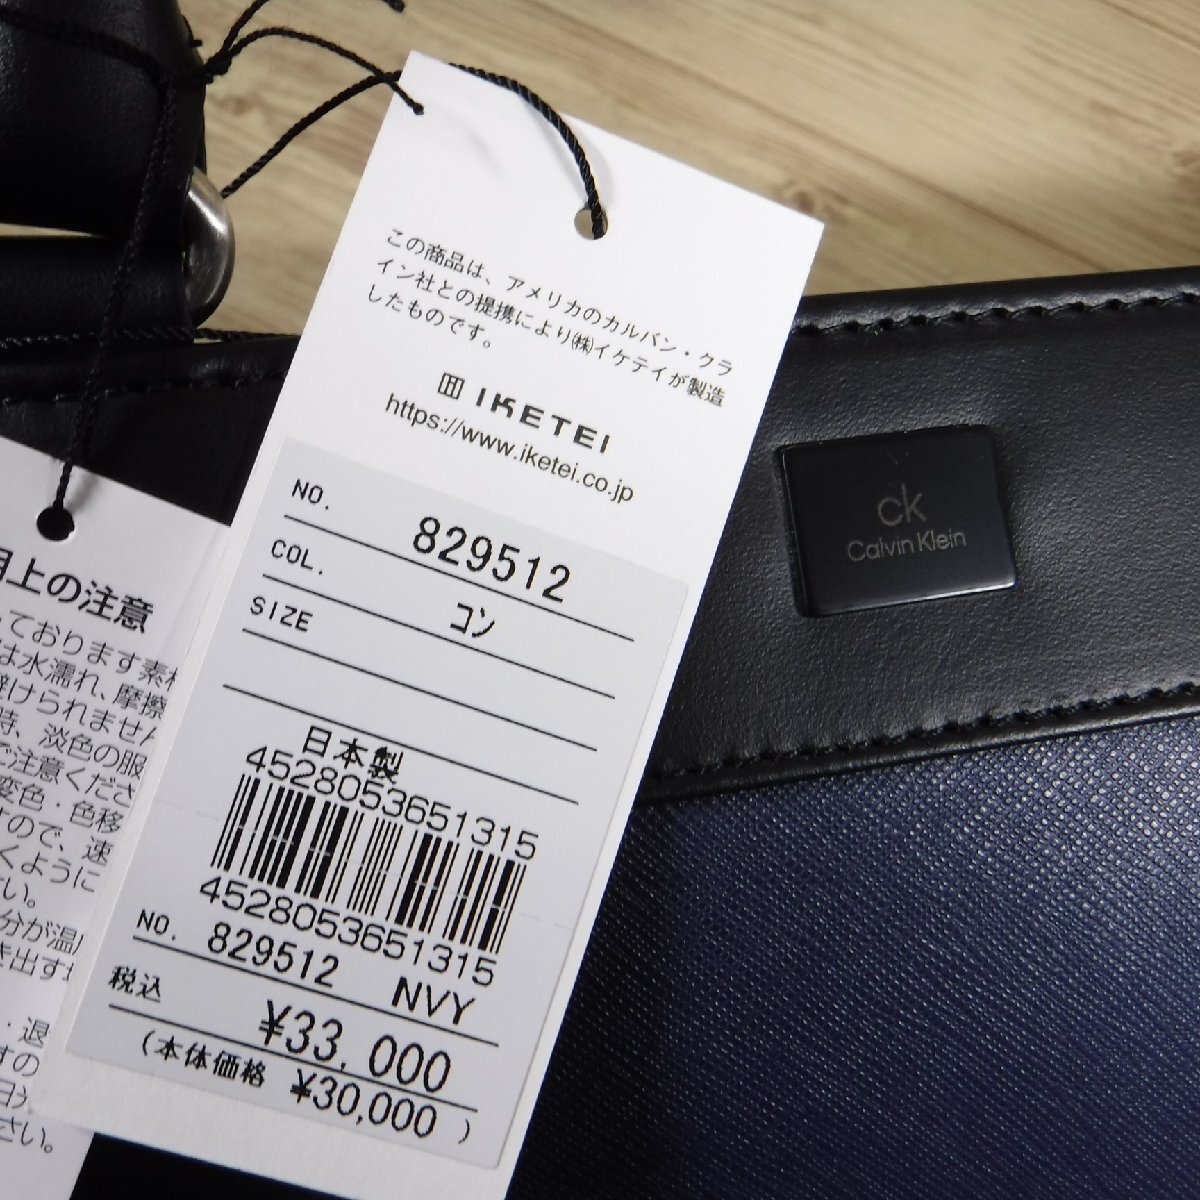 BB927 CK Calvin Klein обычная цена 33000 иен новый товар 2WAY легкий кожа портфель B4 размер сделано в Японии PC место хранения 829512 темно-синий CALVIN KLEIN